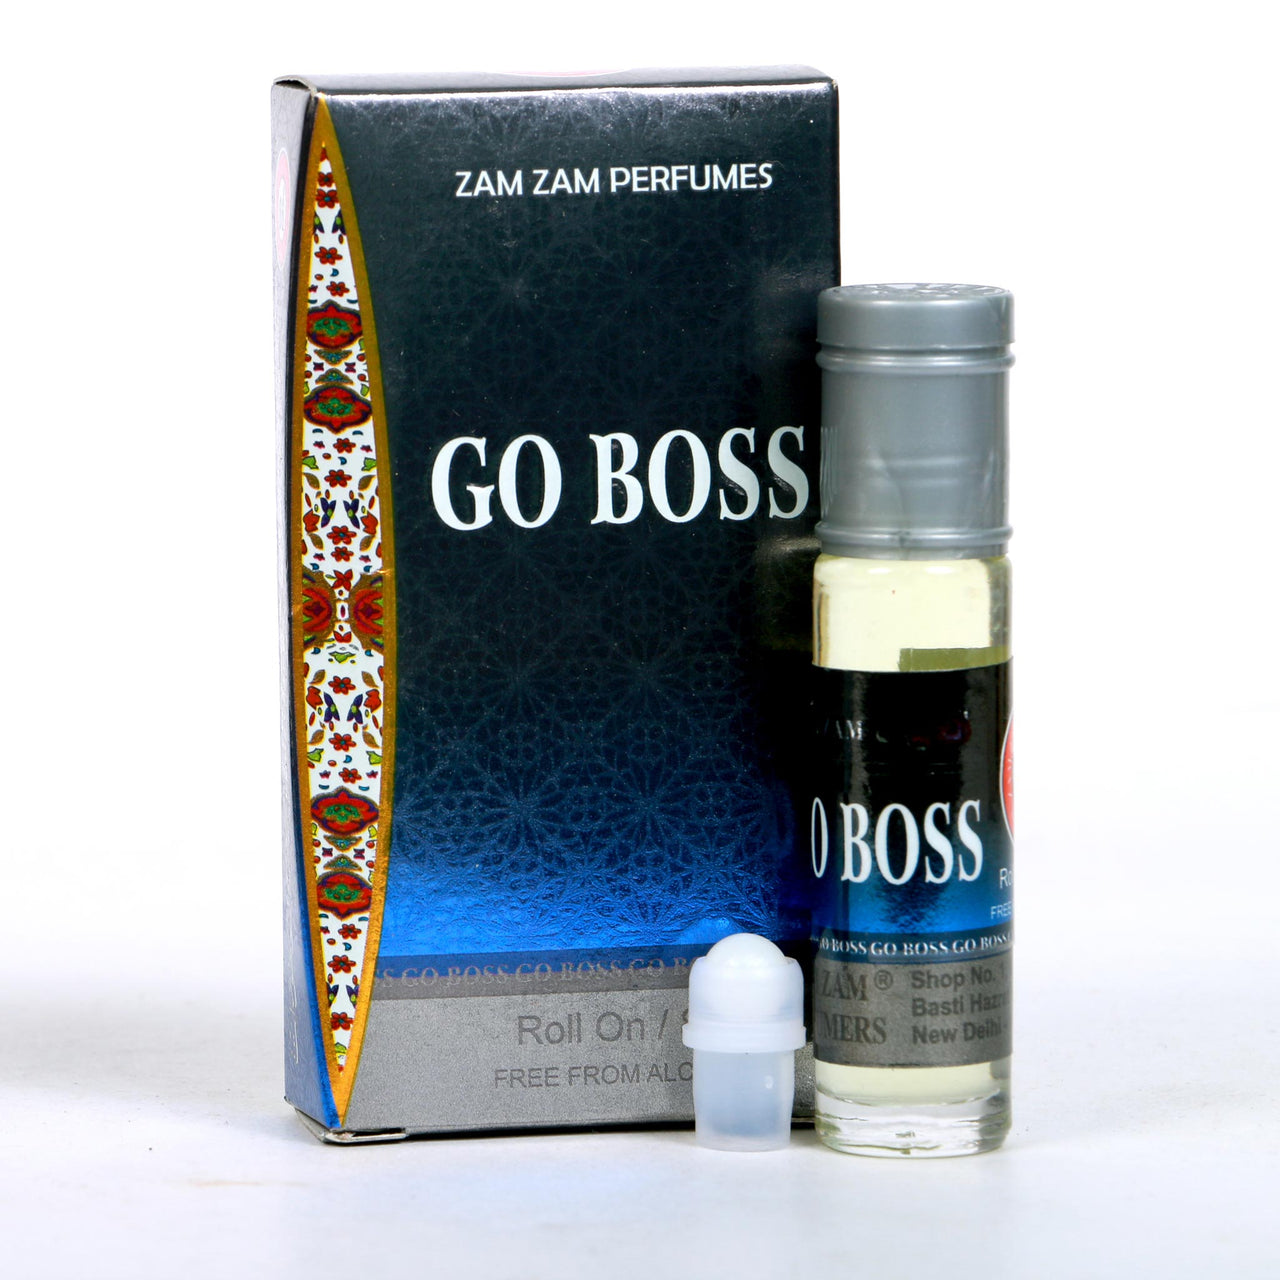 Go Boss (Dozen-Pack) (8ML)